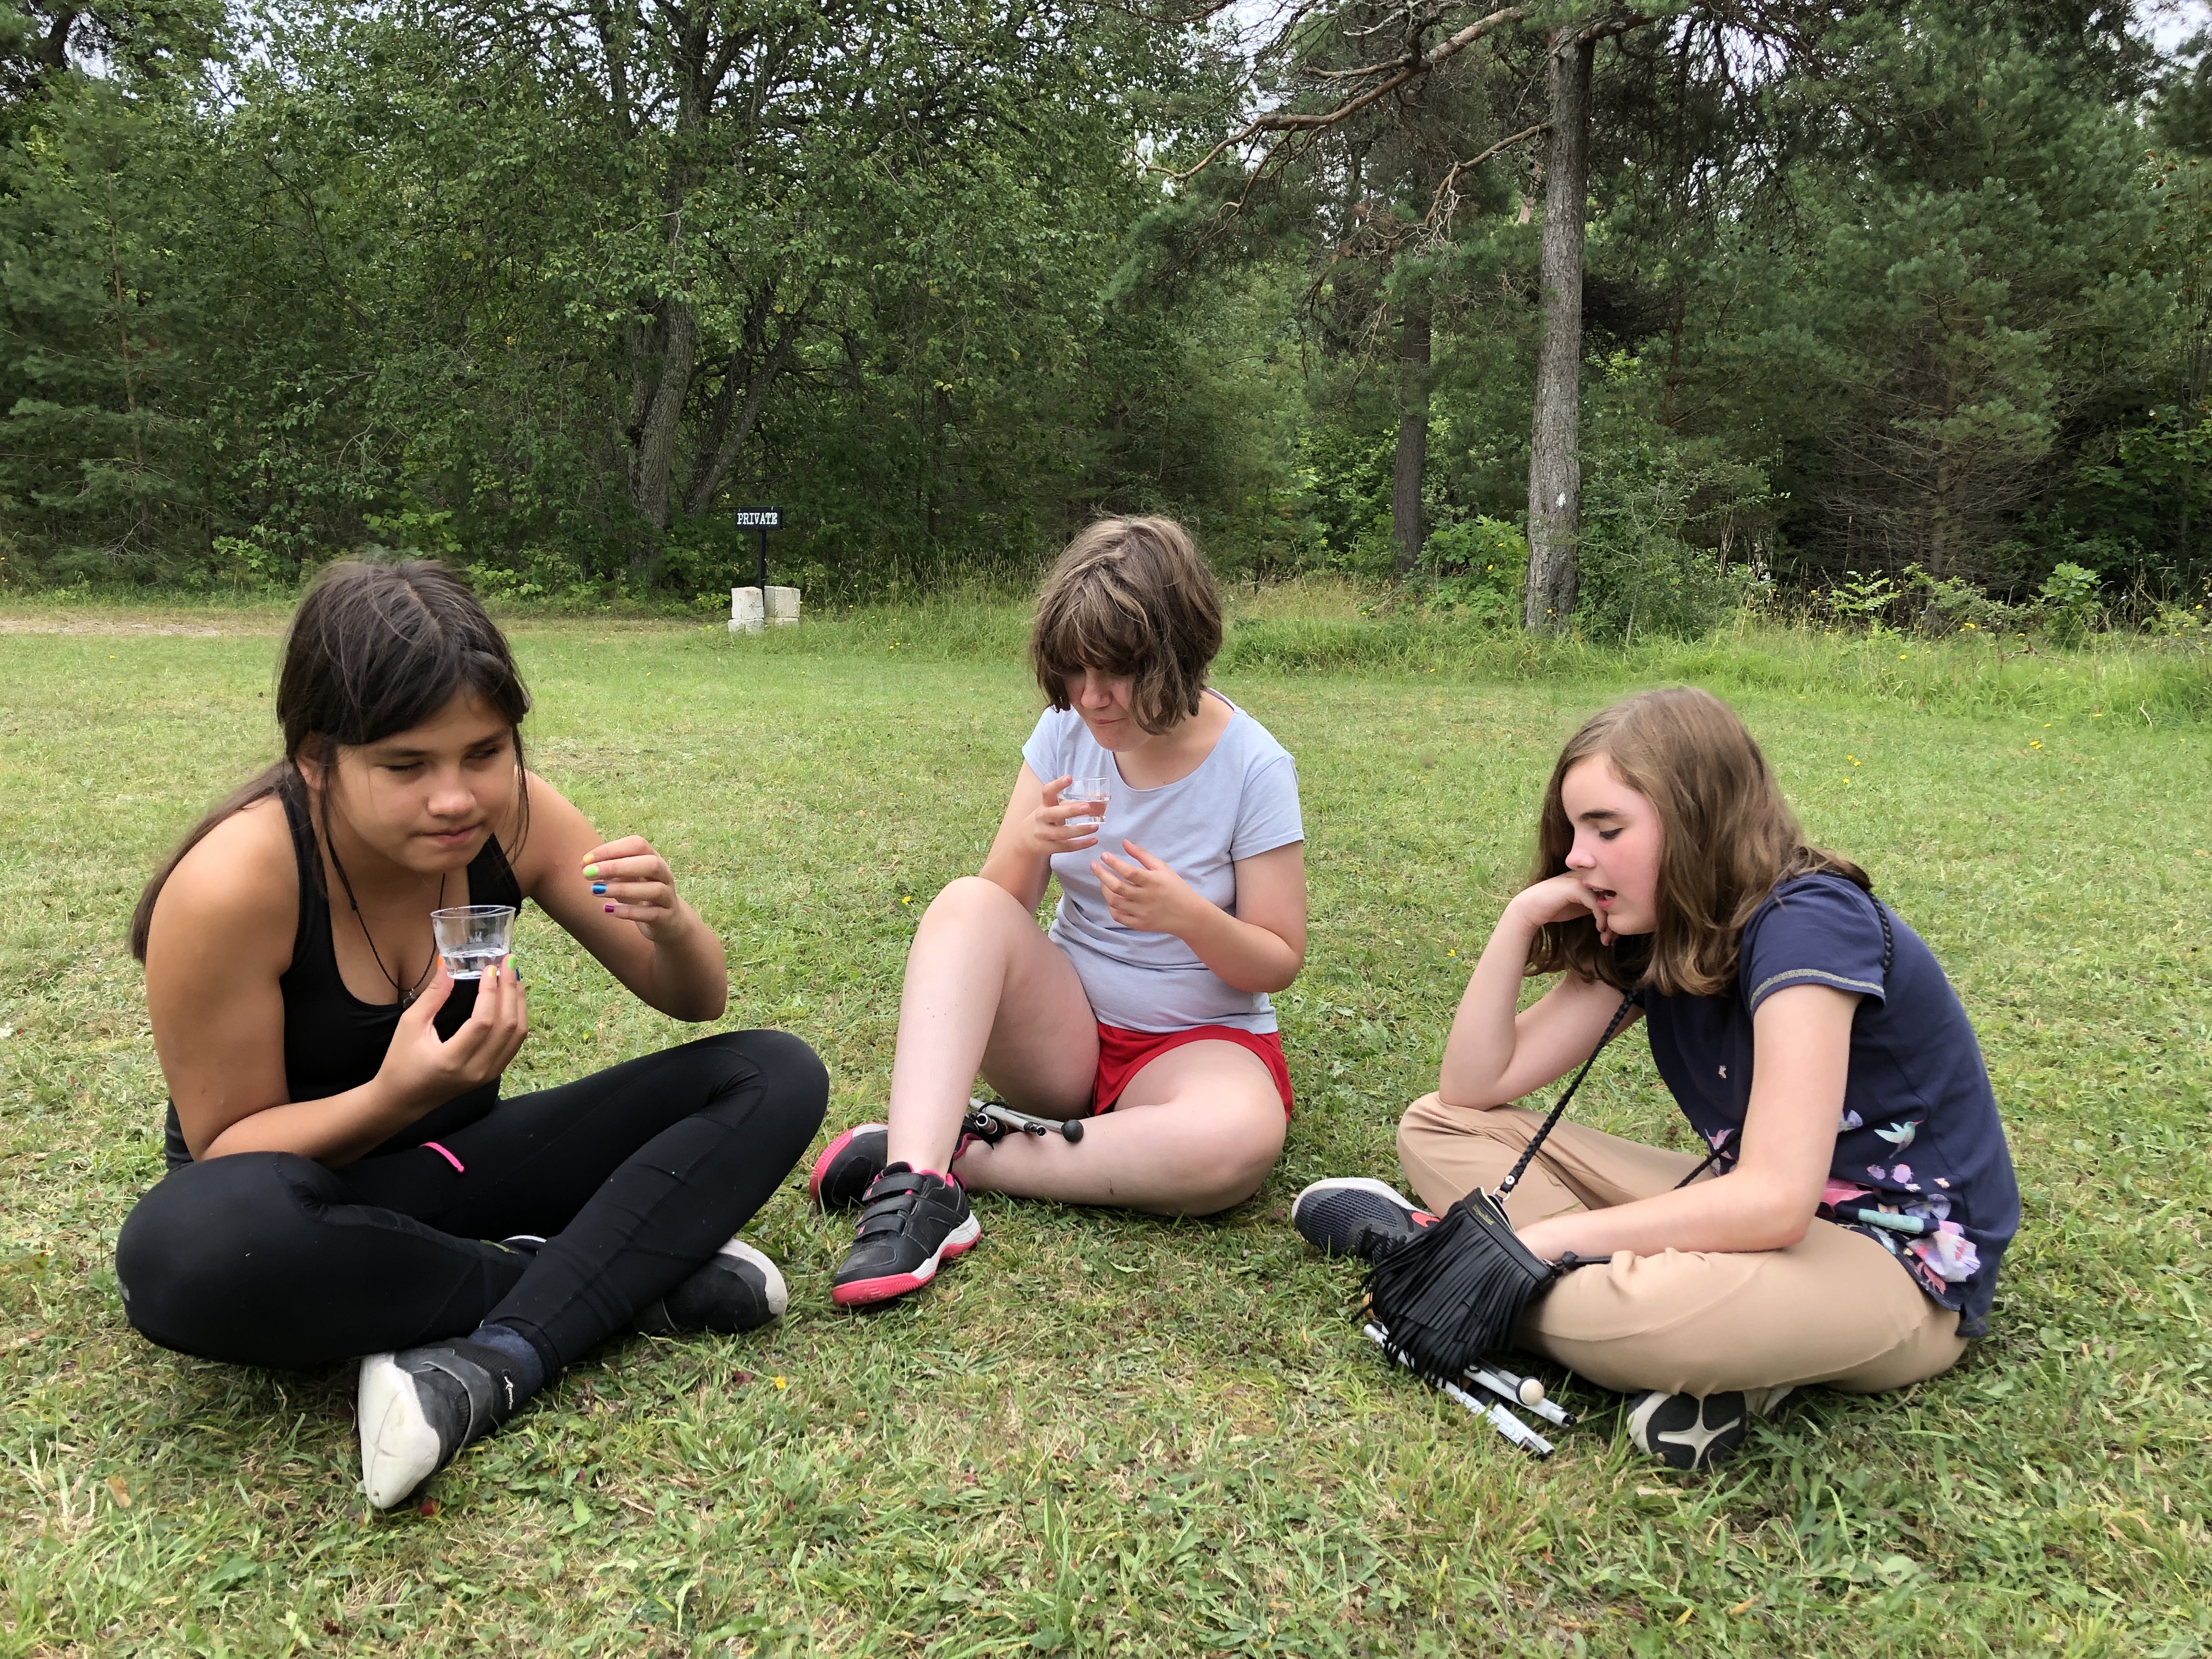 Deltagarna Blanka, Liv och Angelina sitter i skräddarställning på en gräsmatta och pratar.